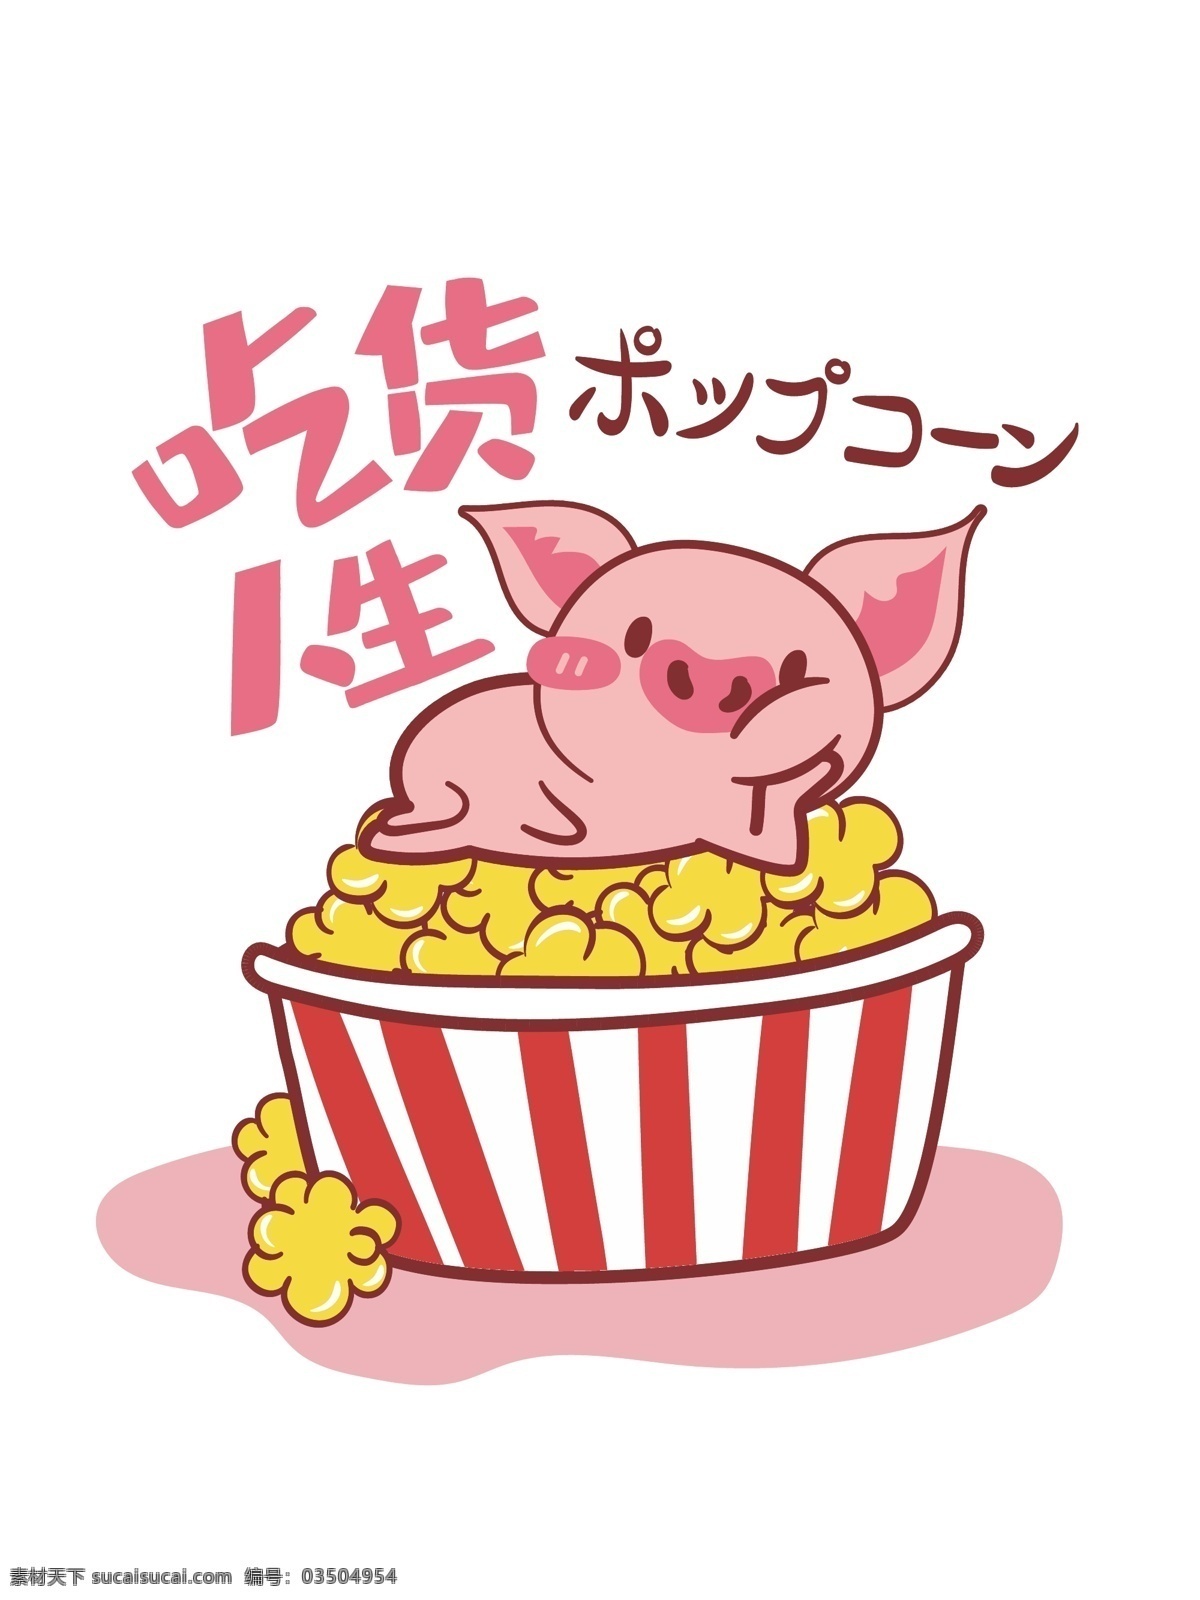 帆布 袋 粉红 猪 爆米花 生活方式 粉红猪 帆布袋 帆布包 矢量 小清新 食物 美食 吃货 可爱